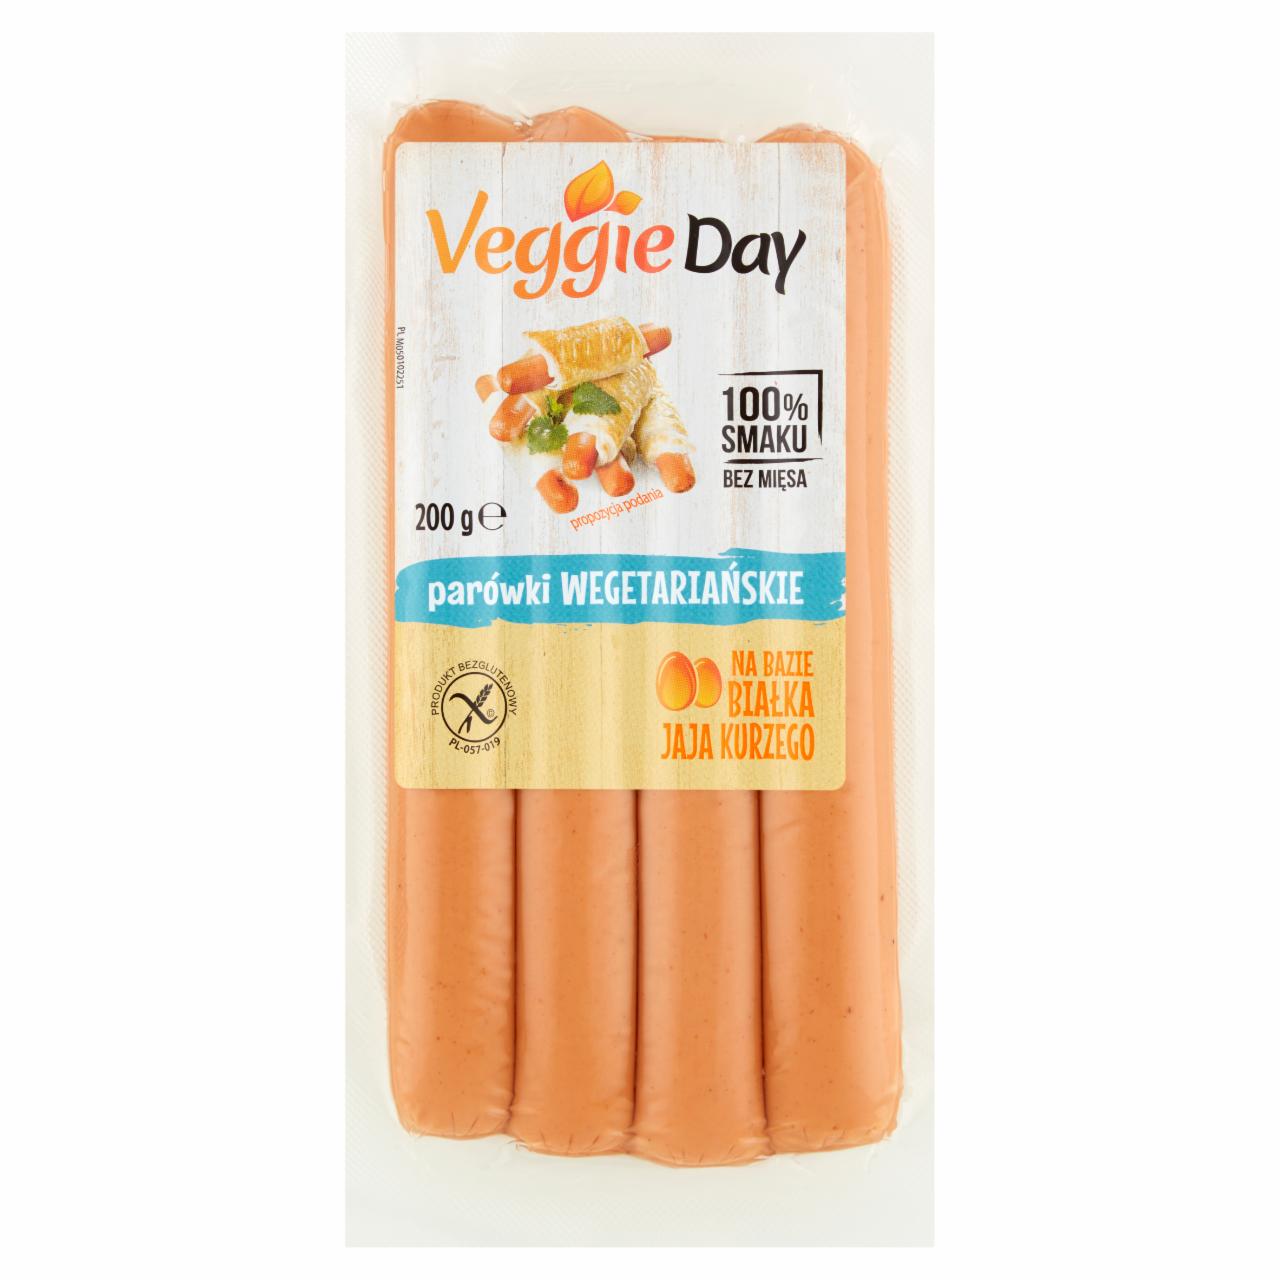 Zdjęcia - VeggieDay Parówki wegetariańskie 200 g